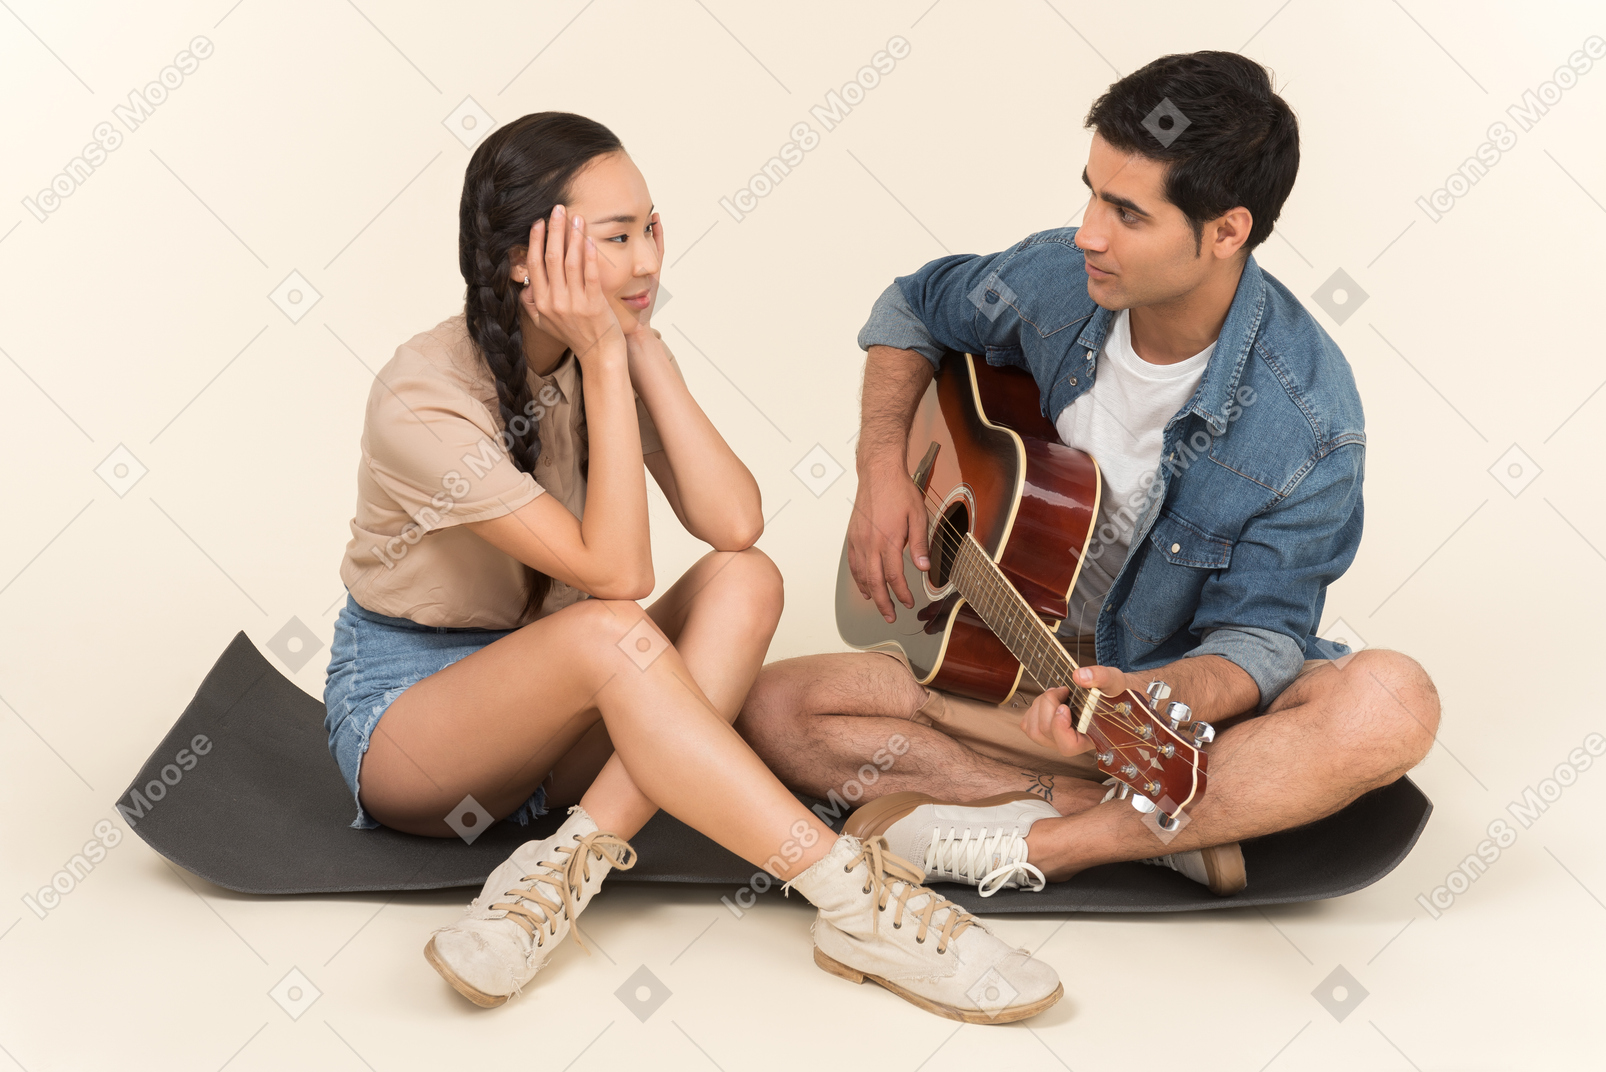 弹吉他的年轻白种人人坐在karimat的亚裔妇女附近